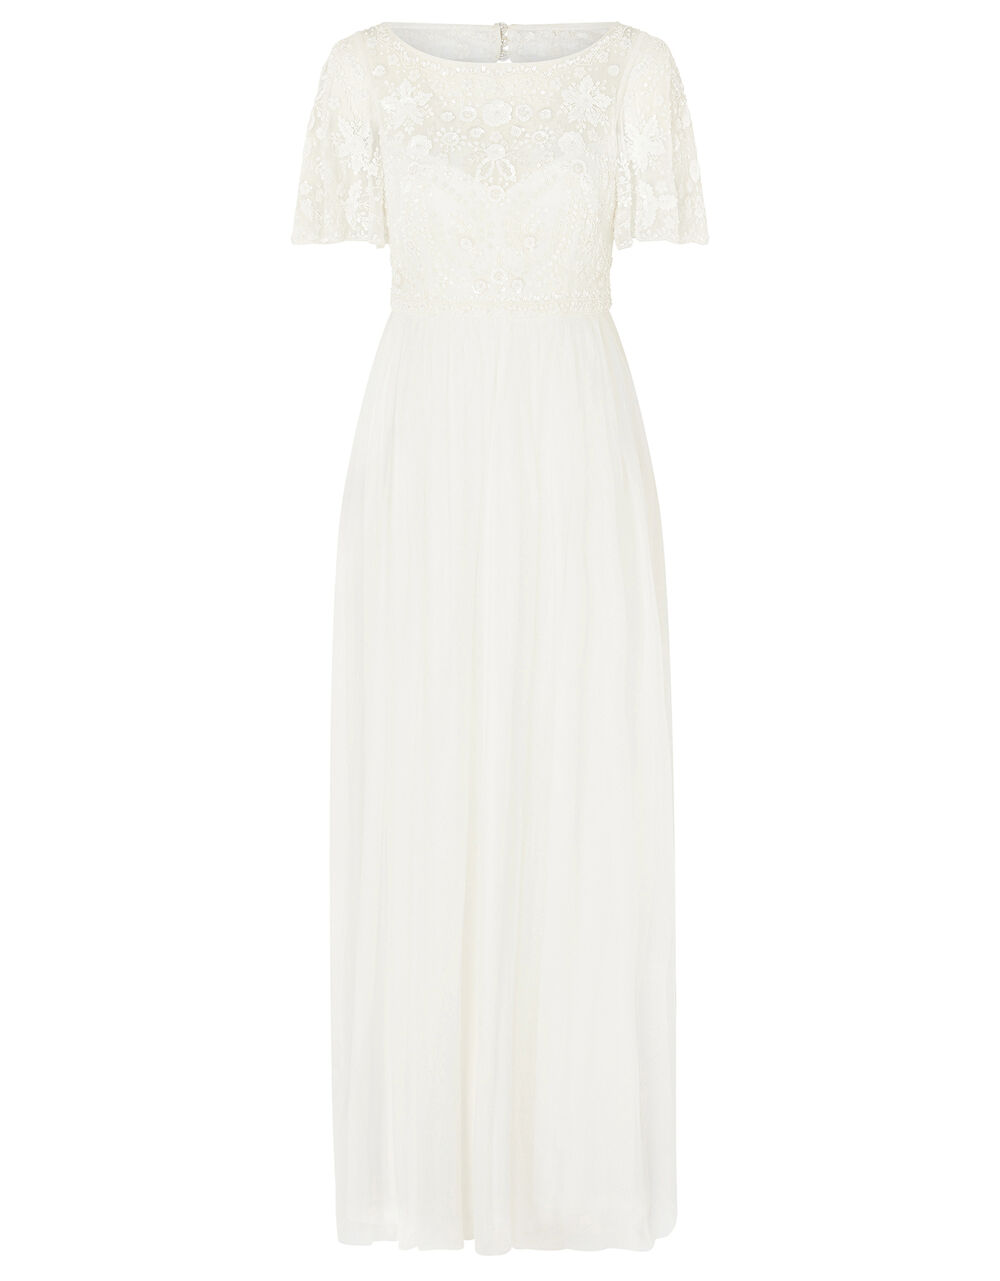 Shelly Floral Embellished Bridal Dress Ivory | Wedding Dresses ...